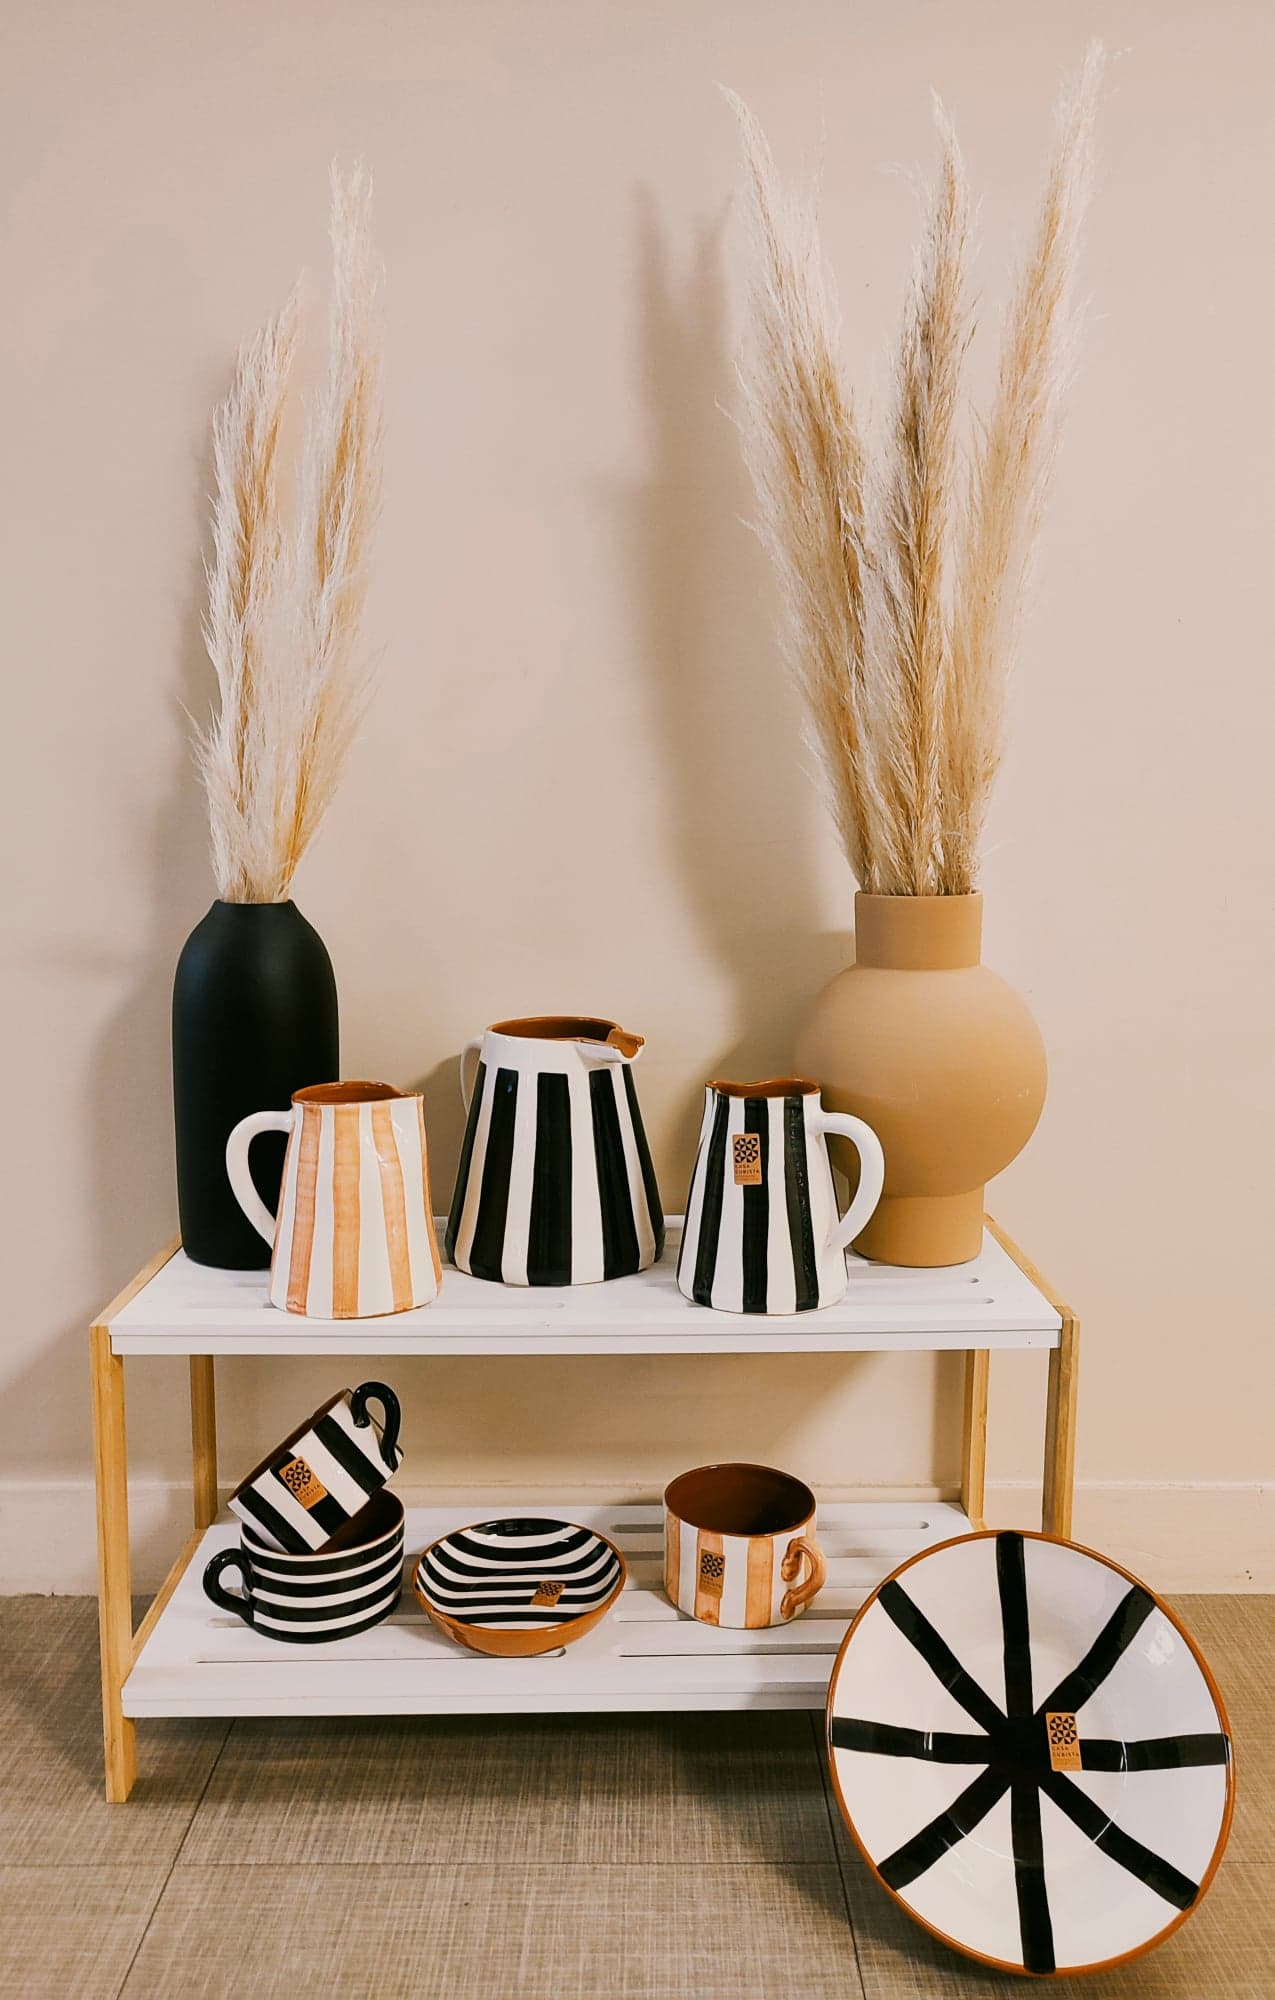 Pichet rayures Olhao Casa cubista Algarve céramique vase noir et blanc fait à la main artisanat N&B portugal épicerie fine artisanat Saudade concept store cherbourg normandie vaisselle décoration 